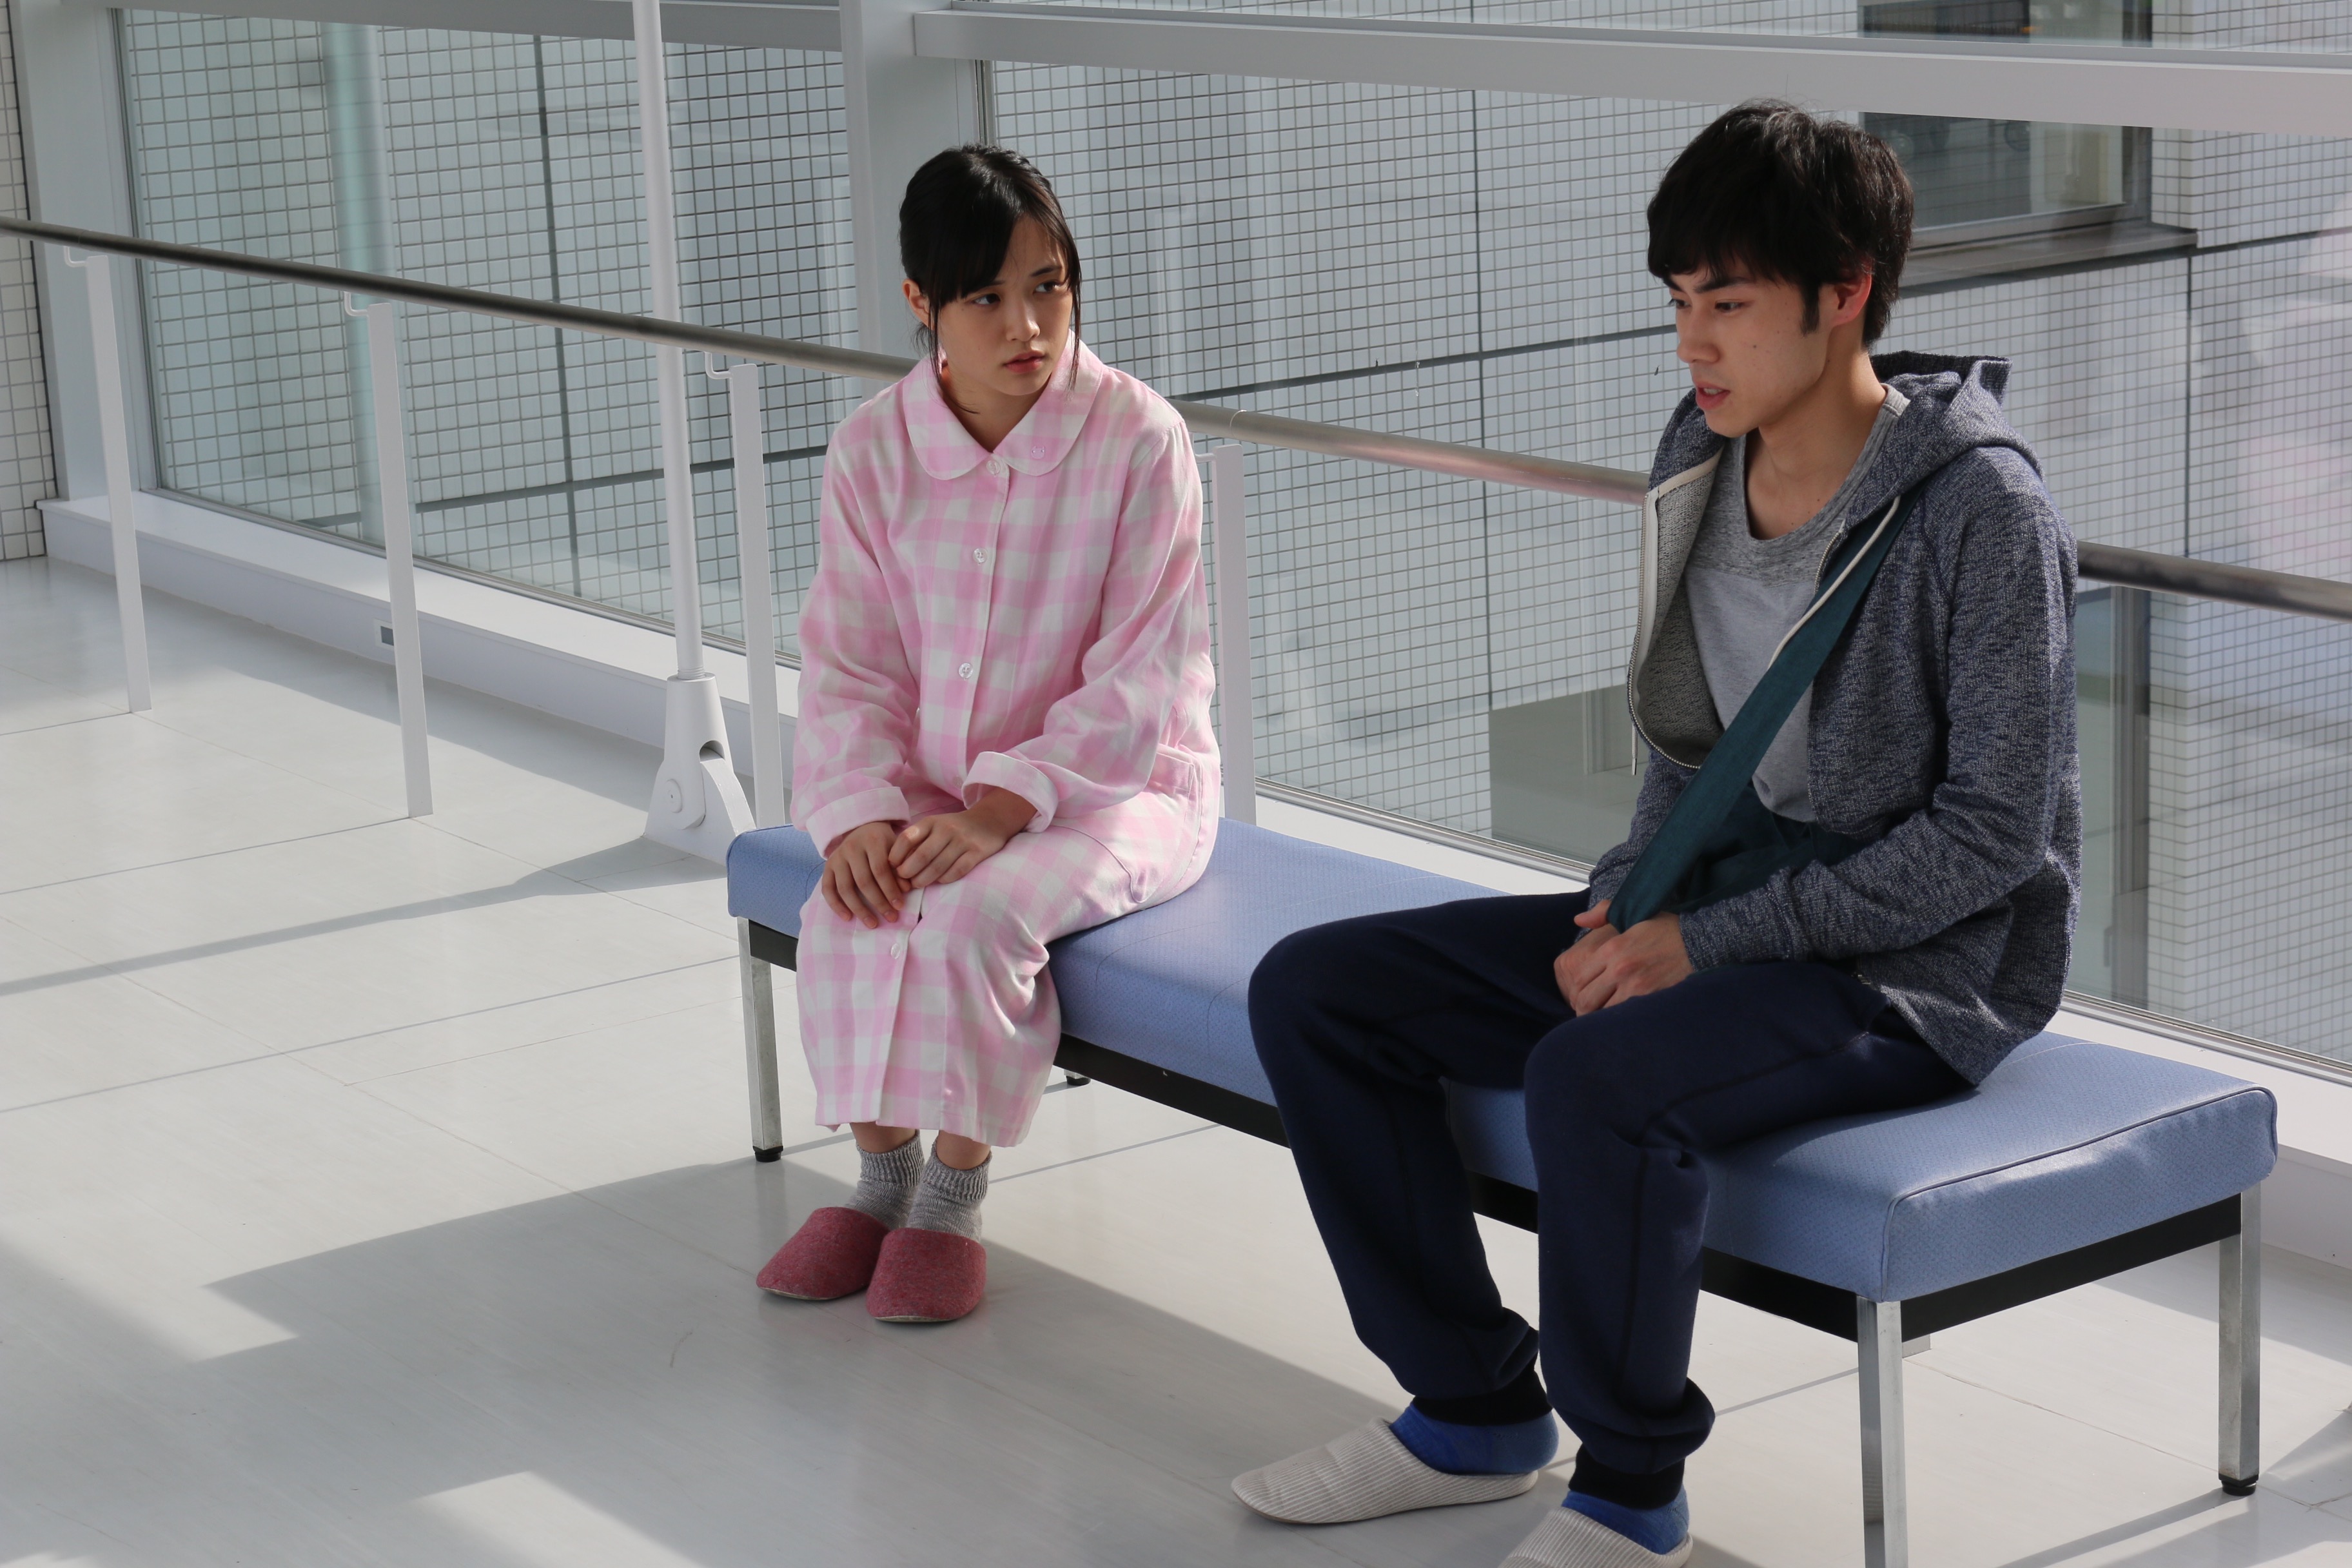 大原櫻子 本人主演 2ndアルバムリード曲を主題とした とある病院での物語 サイン 公開 Skiyakiのプレスリリース